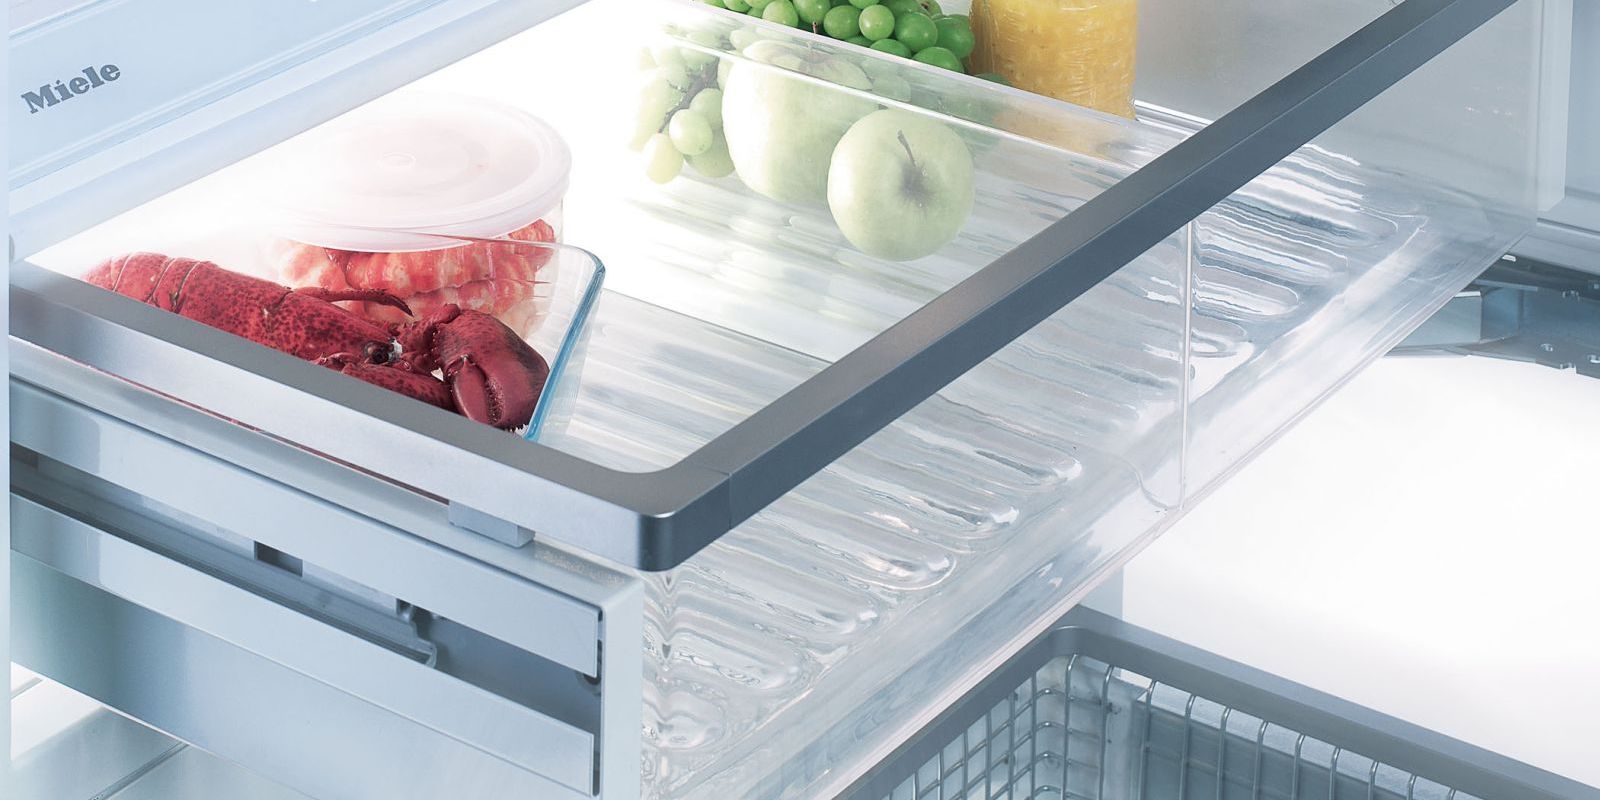 Kühlfach eines Kühlschranks gefüllt mit Meerestieren und Früchten